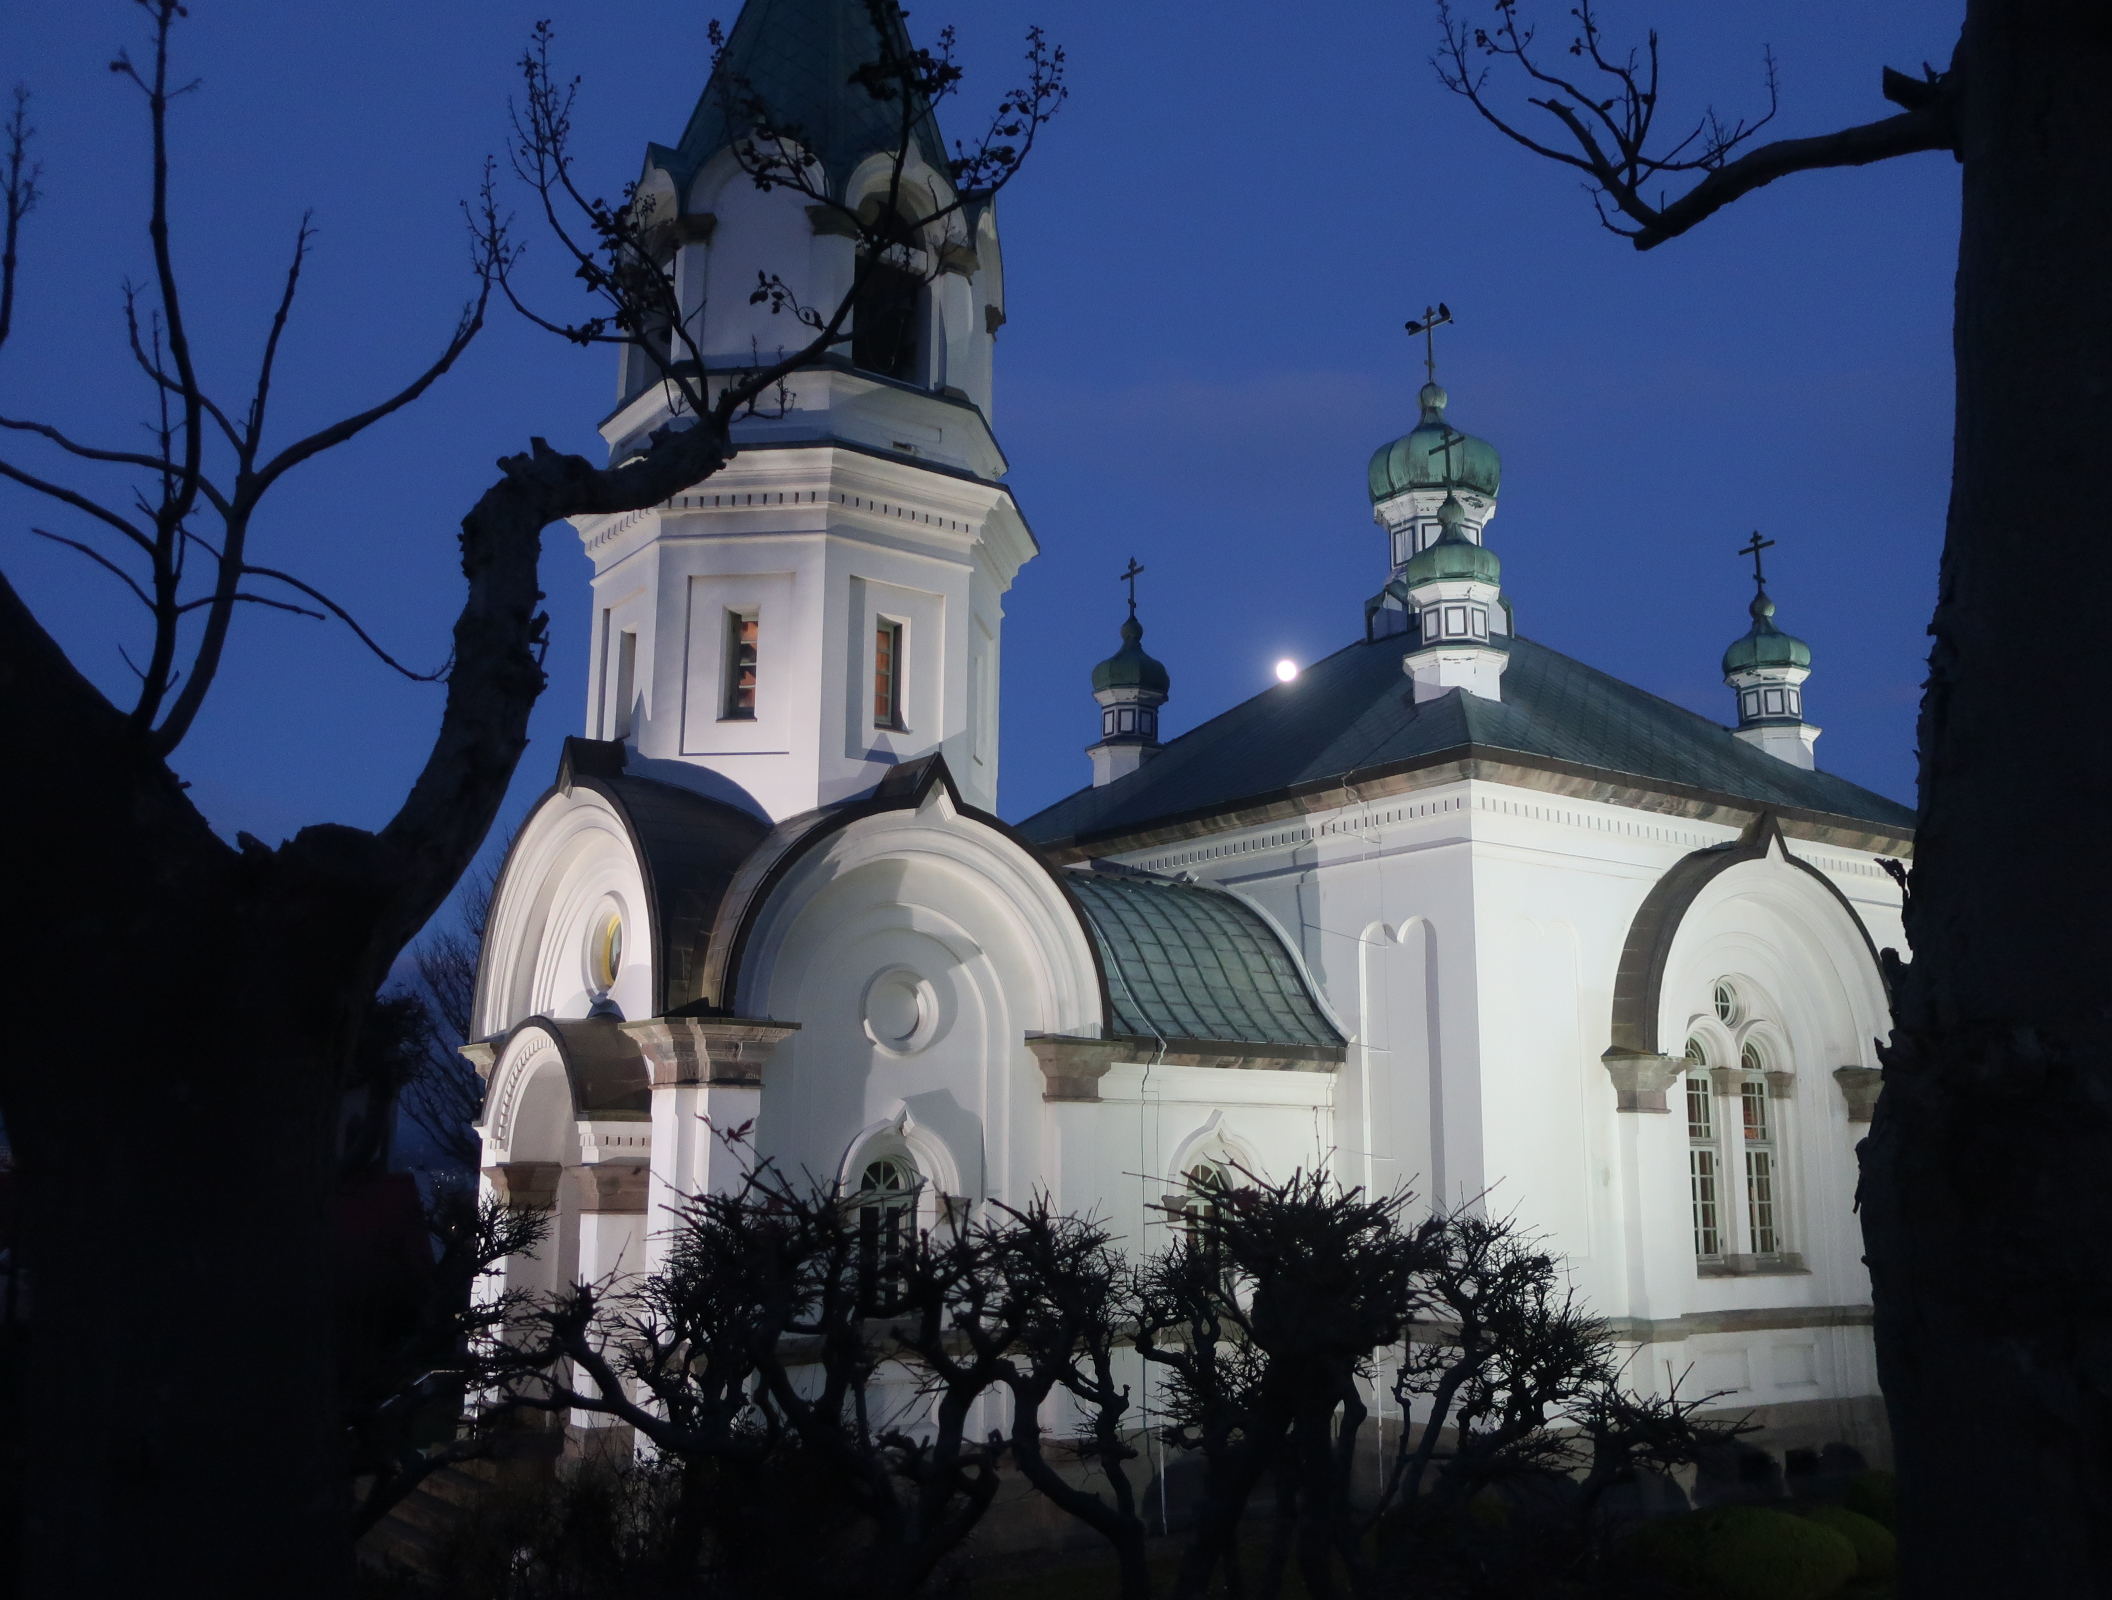 函館ハリストス正教会を訪ねて ロシア正教の祈りとガンガン寺の鐘の音